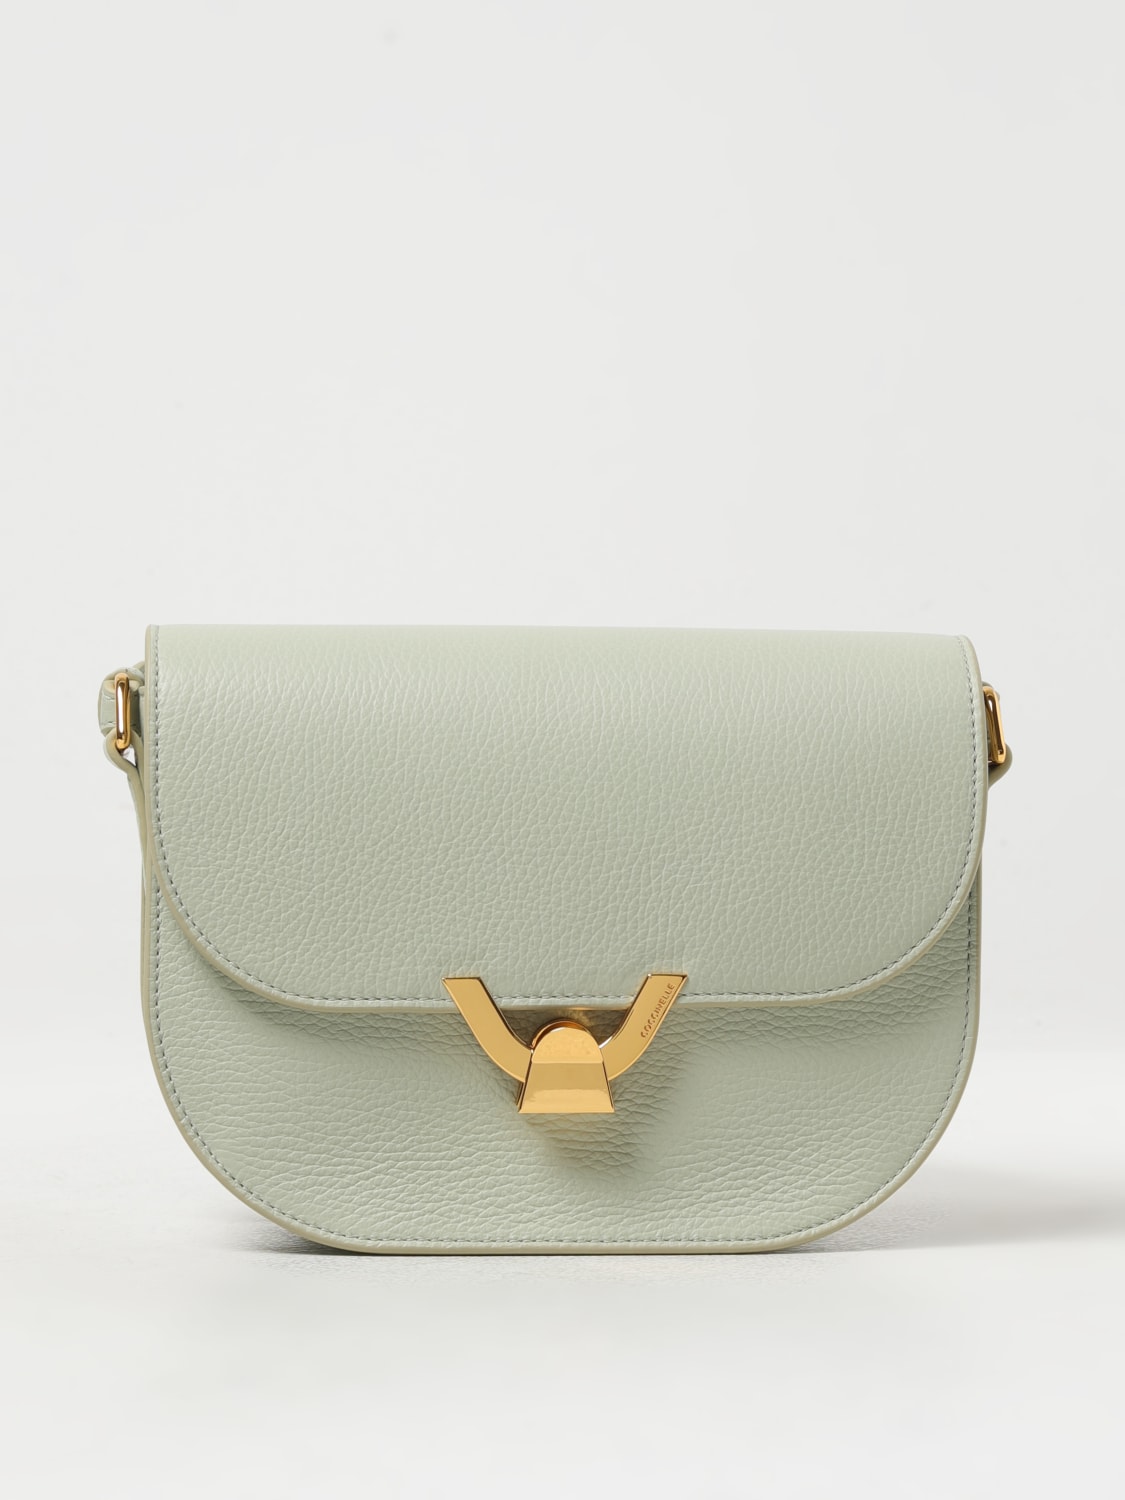 Coccinelle Borse Bag In Caper / Green New | eBay